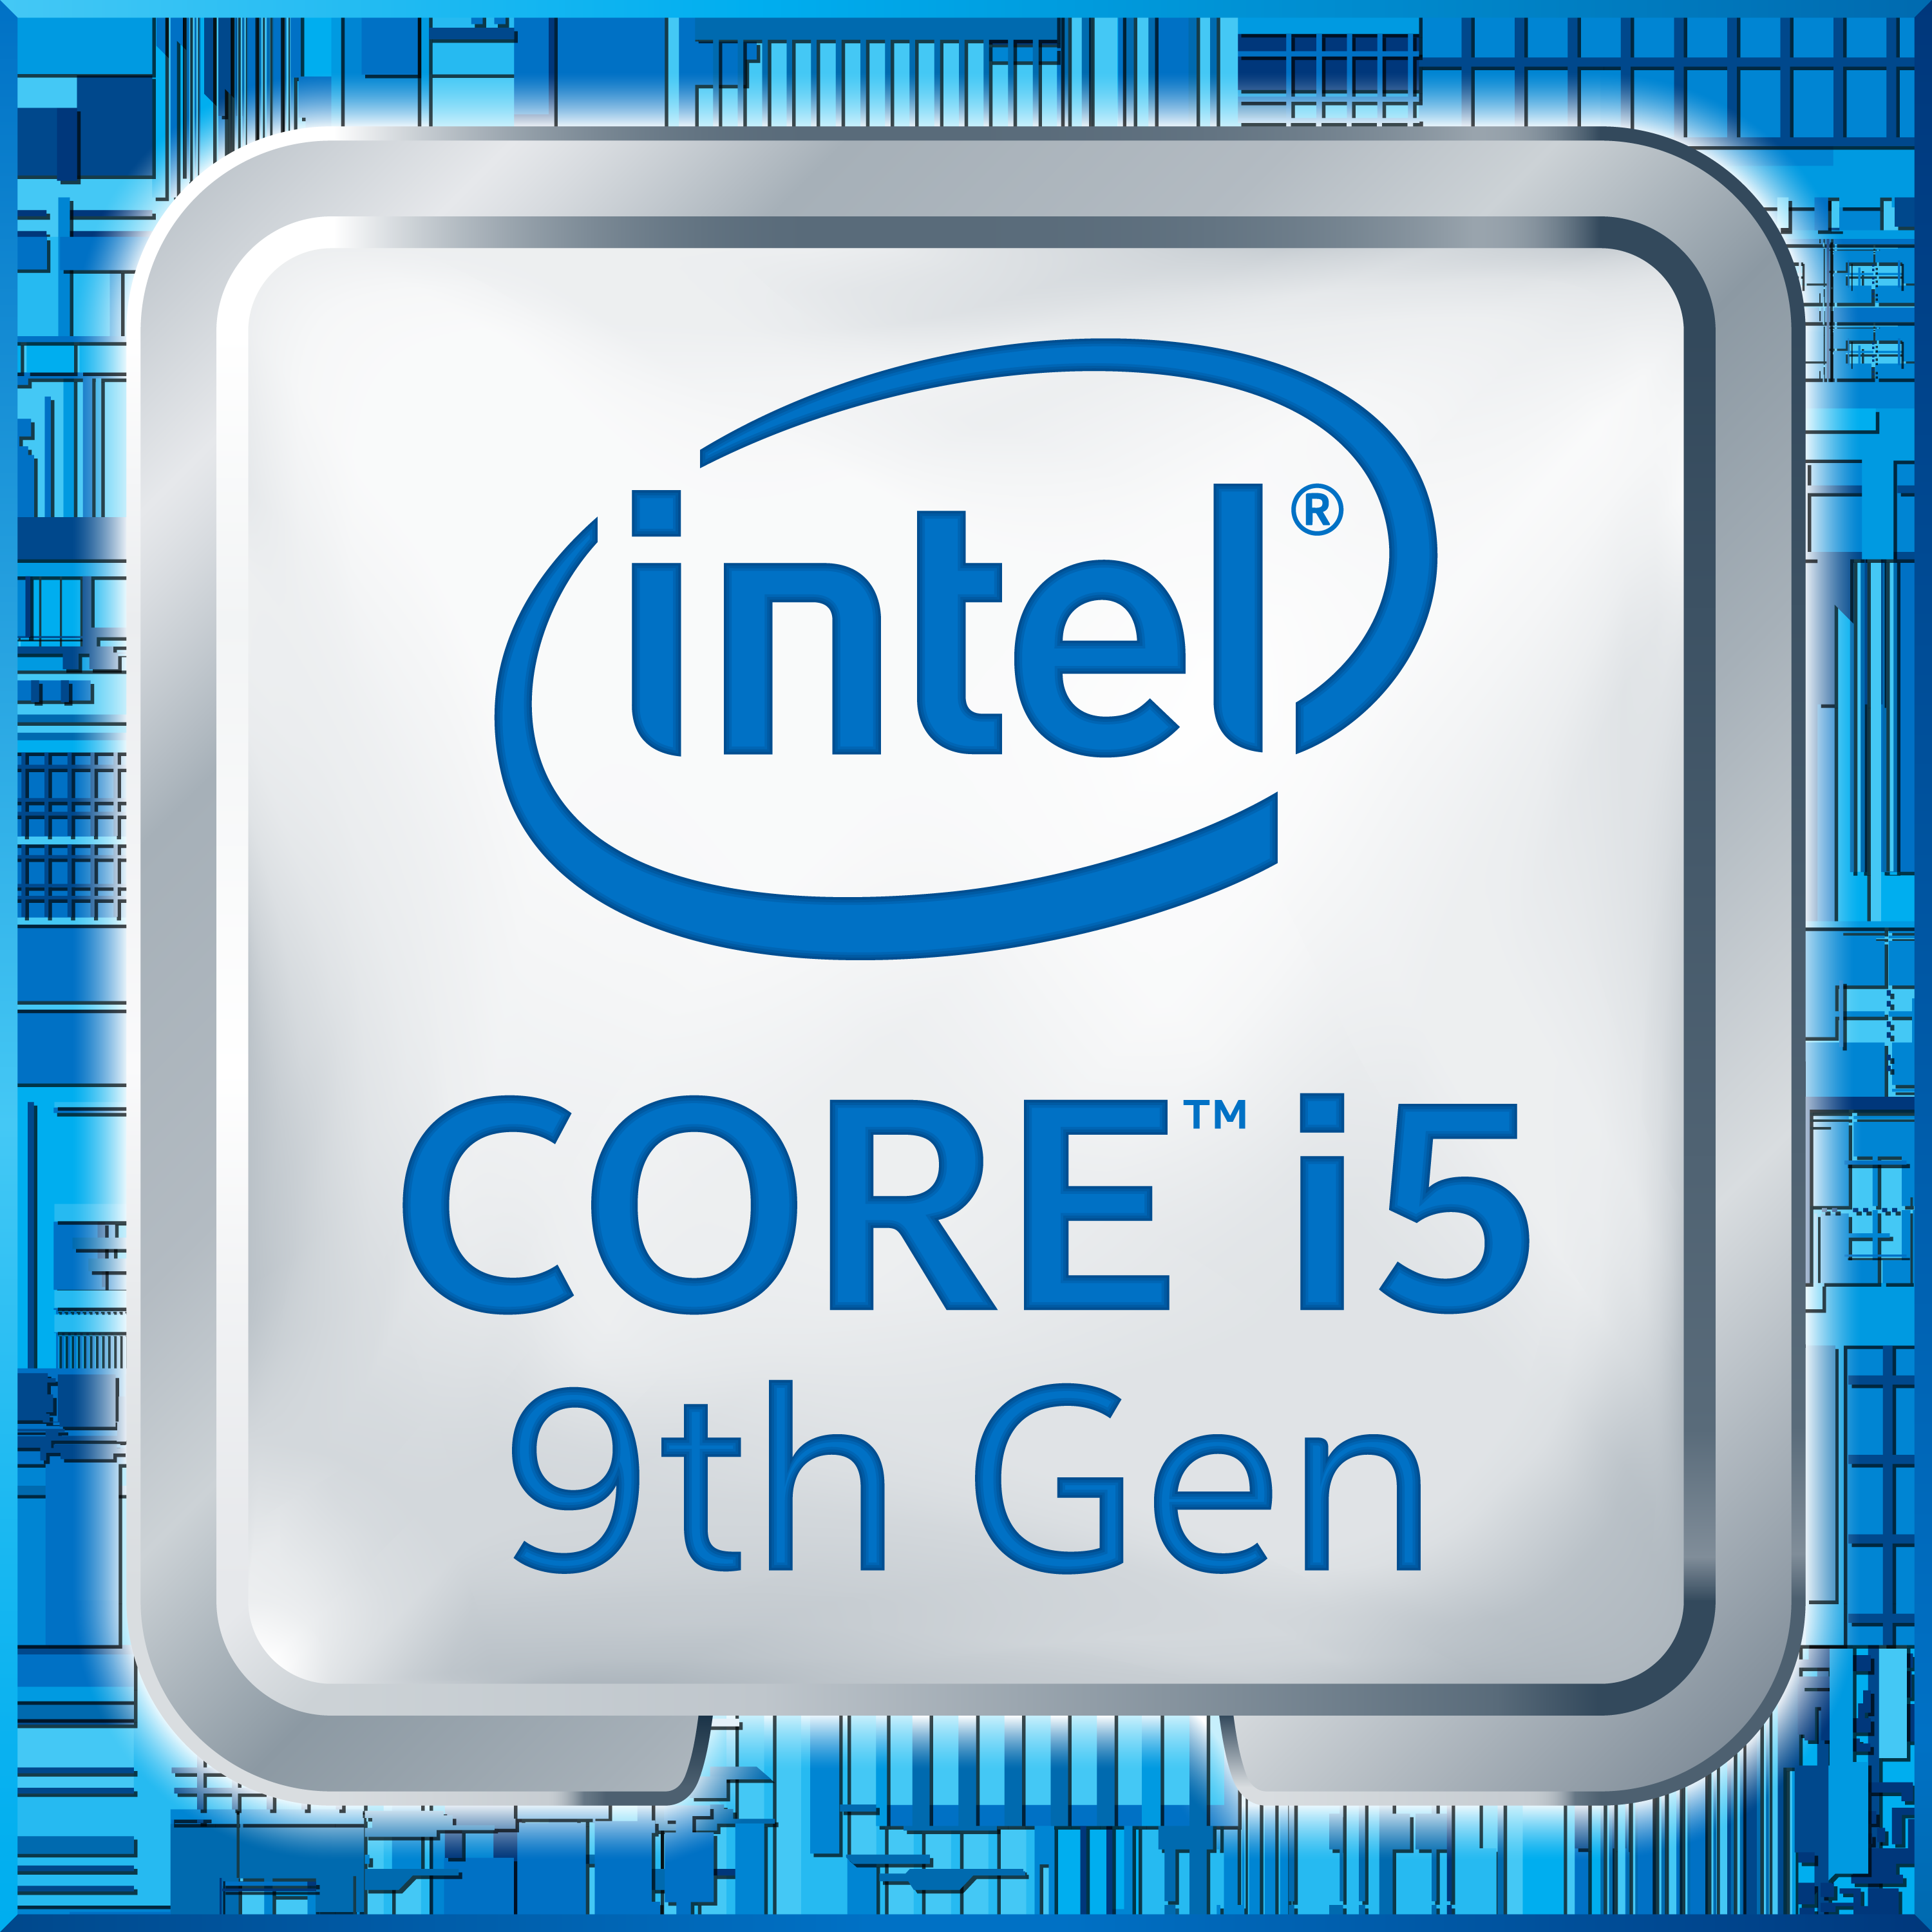 Intel Core i5 9th Gen